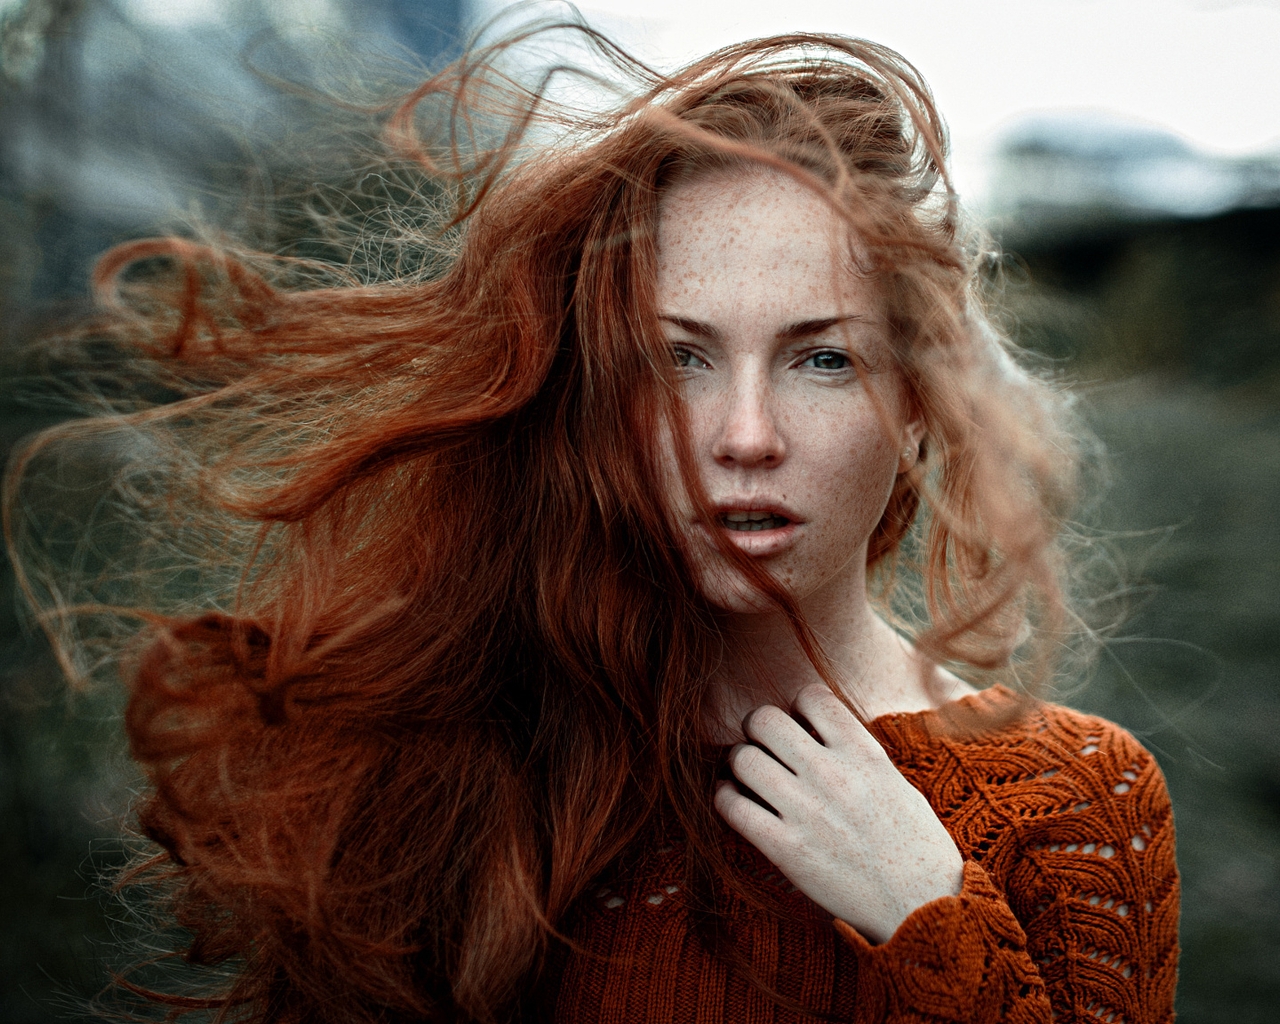 Картинка: Девушка, лицо, рыжая, веснушки, ветер, волосы, взгляд, кофта